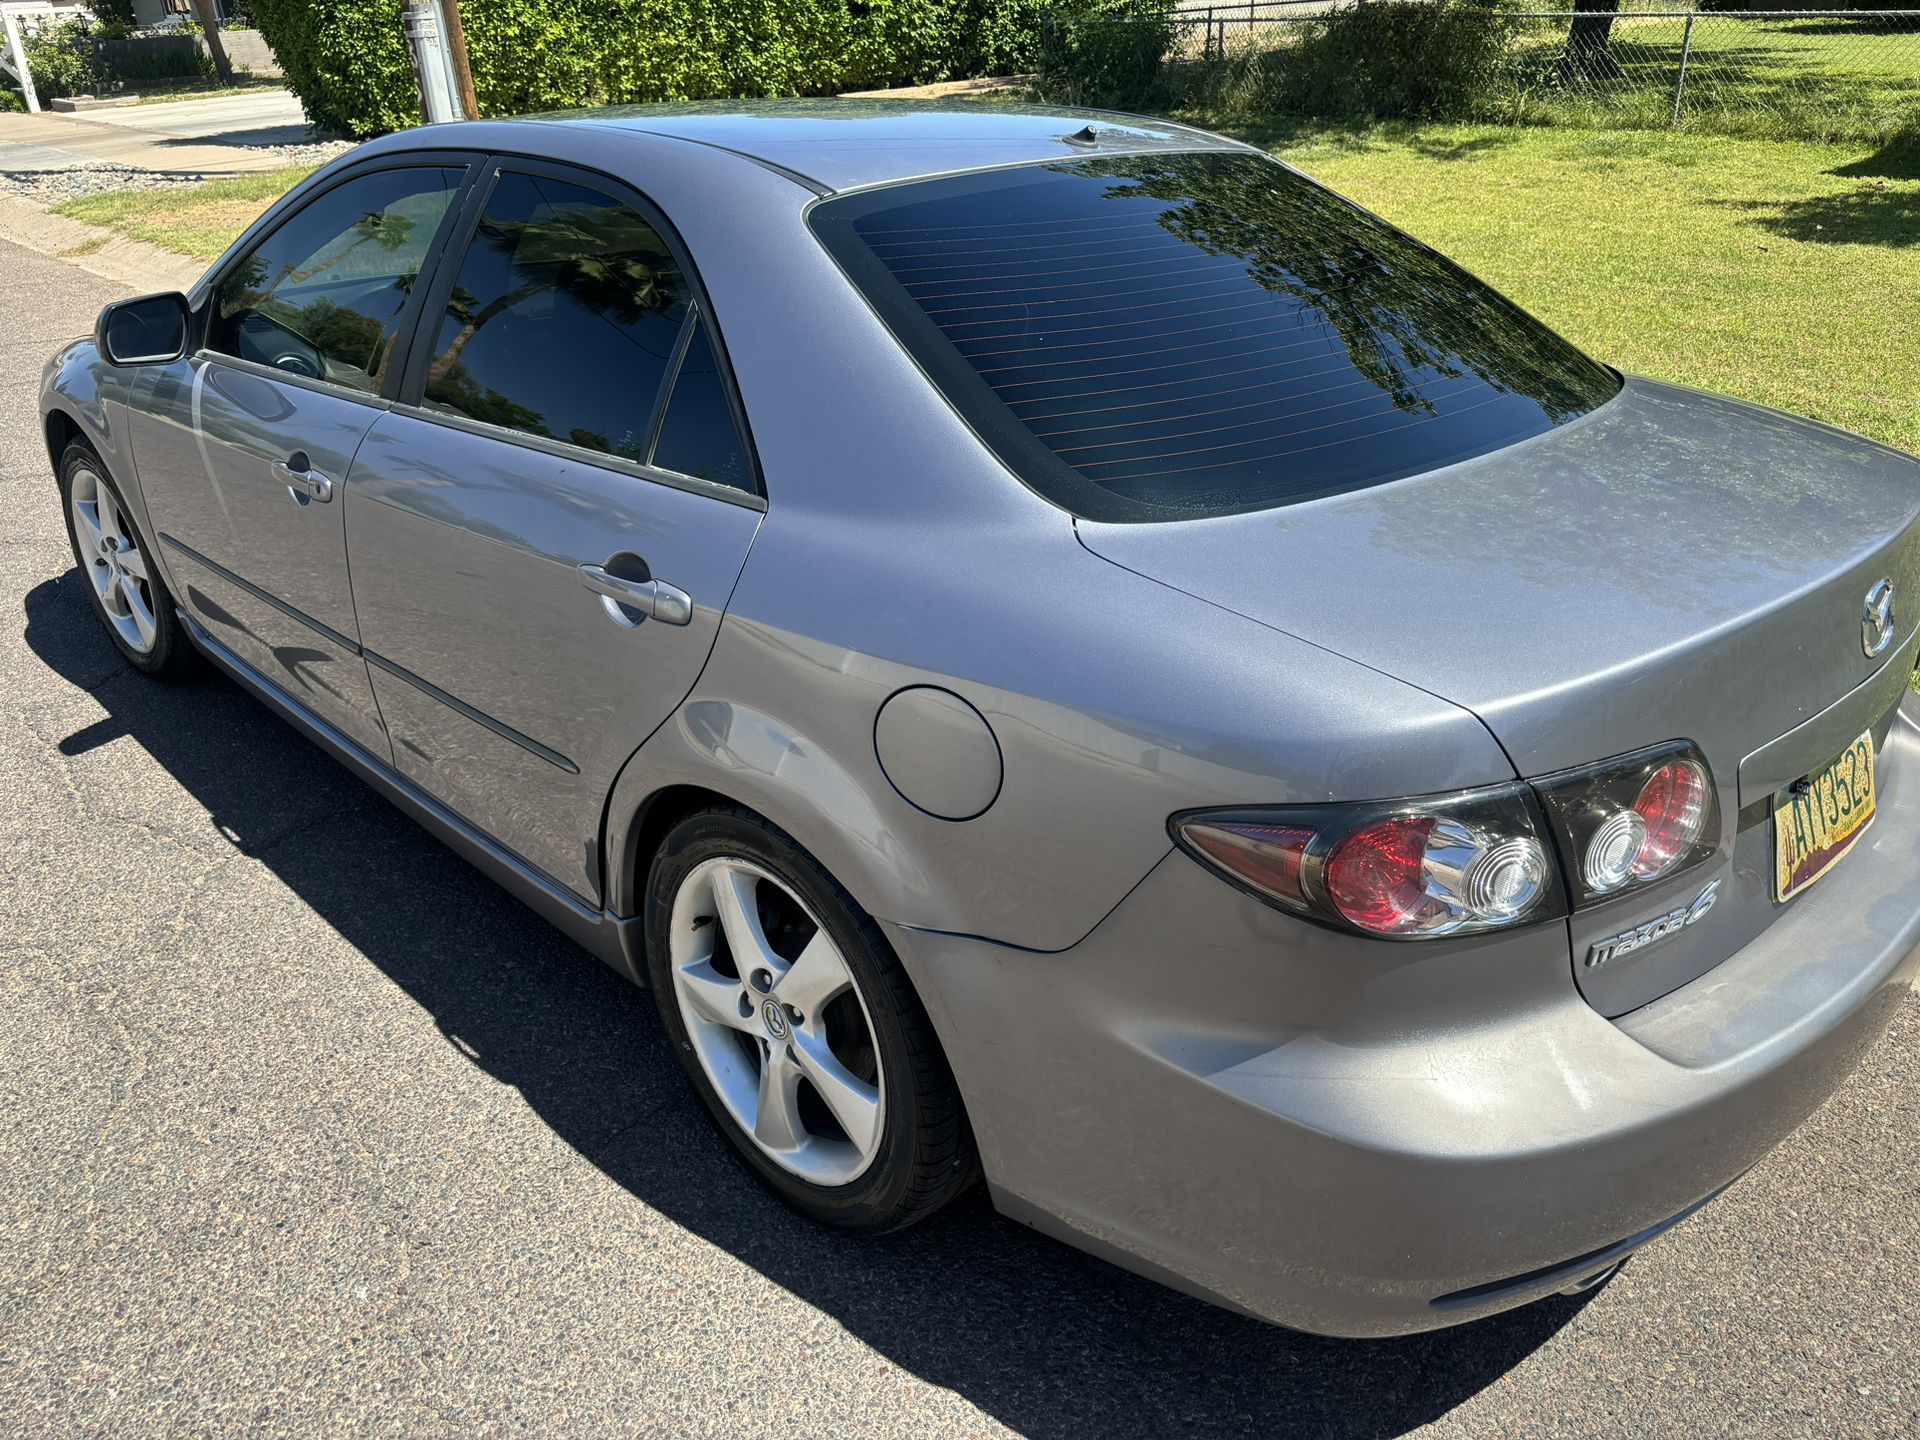 2008 Mazda Mazda6